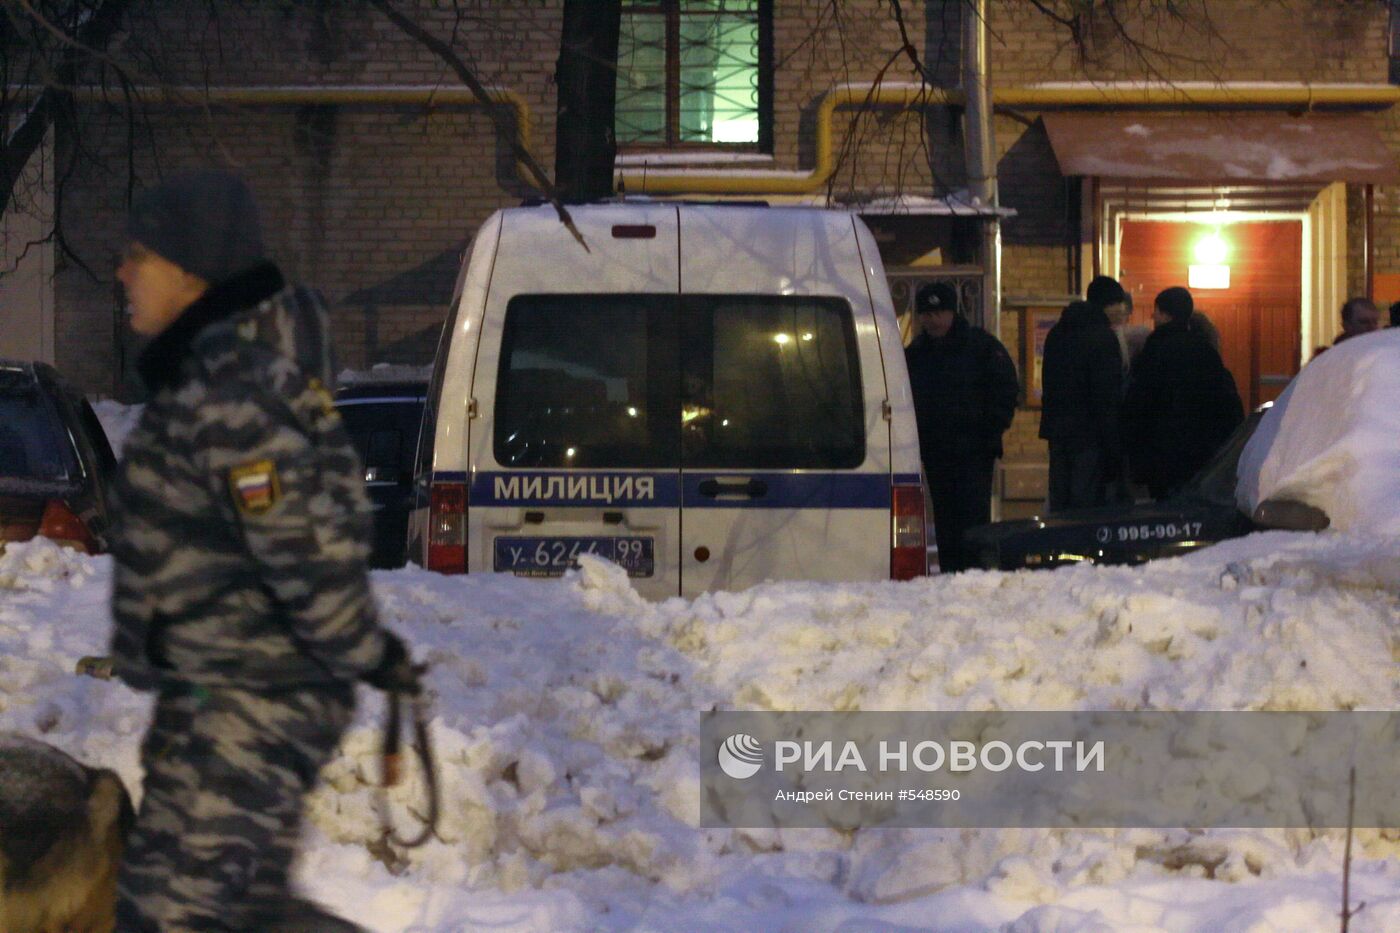 Мужчина расстрелян возле станции метро "Университет"